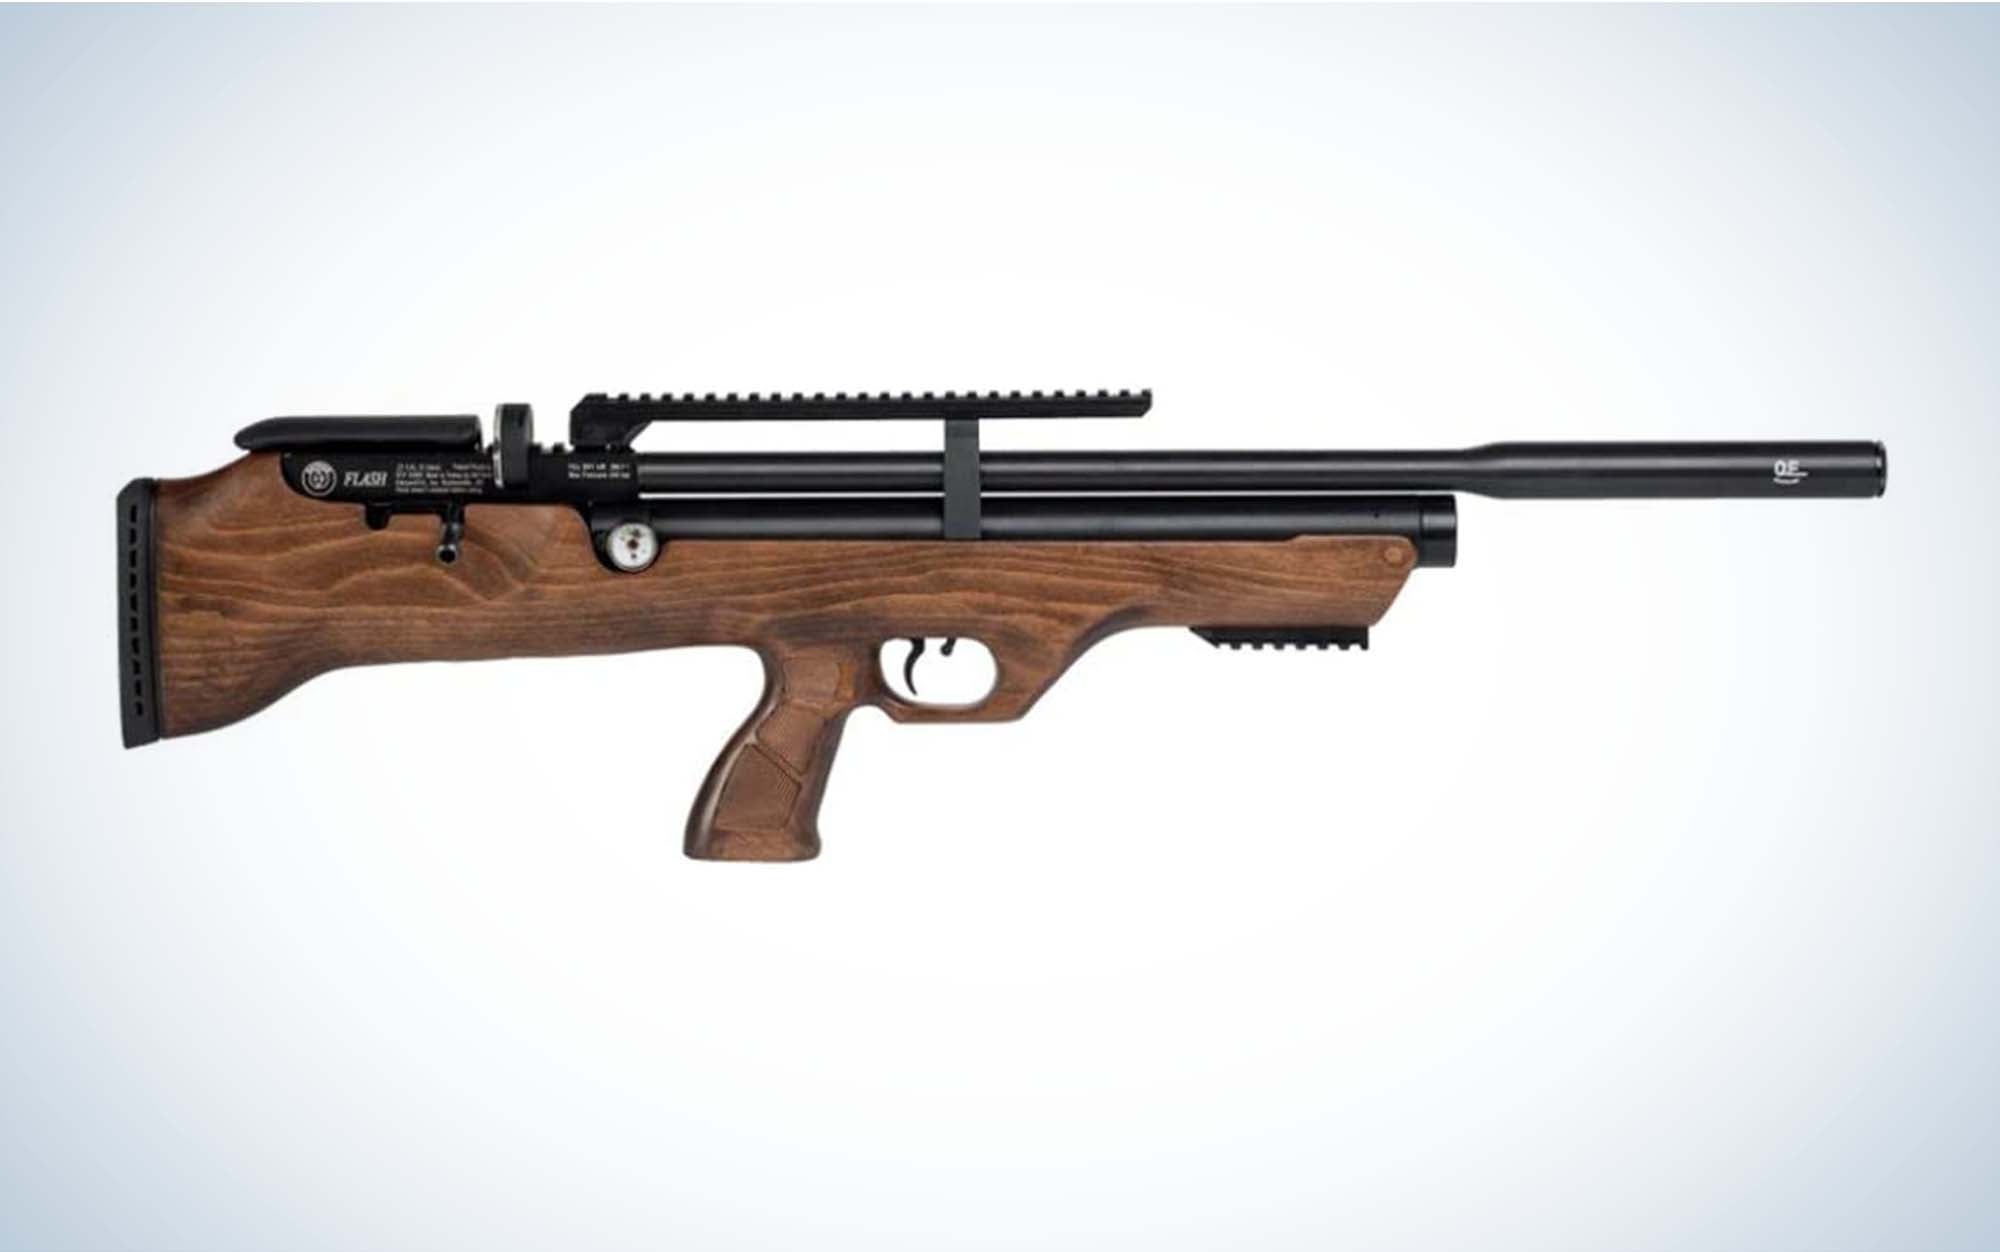 The Hatsan Flashpup is a compact air rifle.